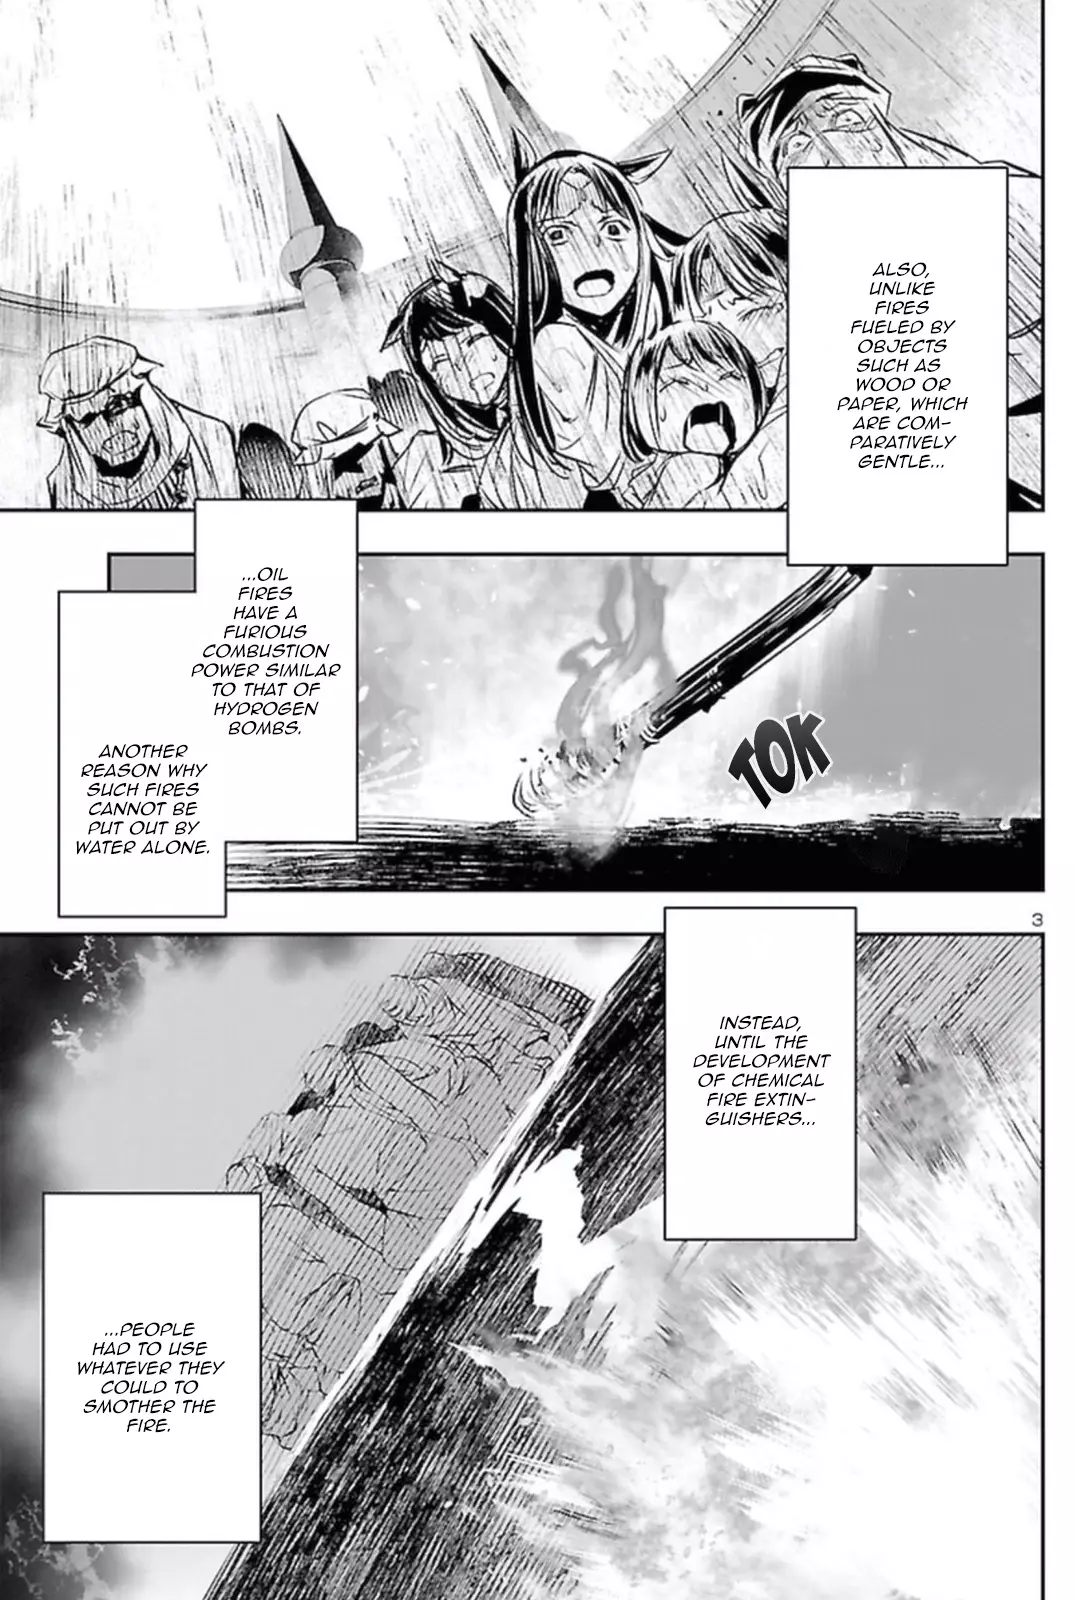 Shinju no Nectar - 63 page 2-221a1601